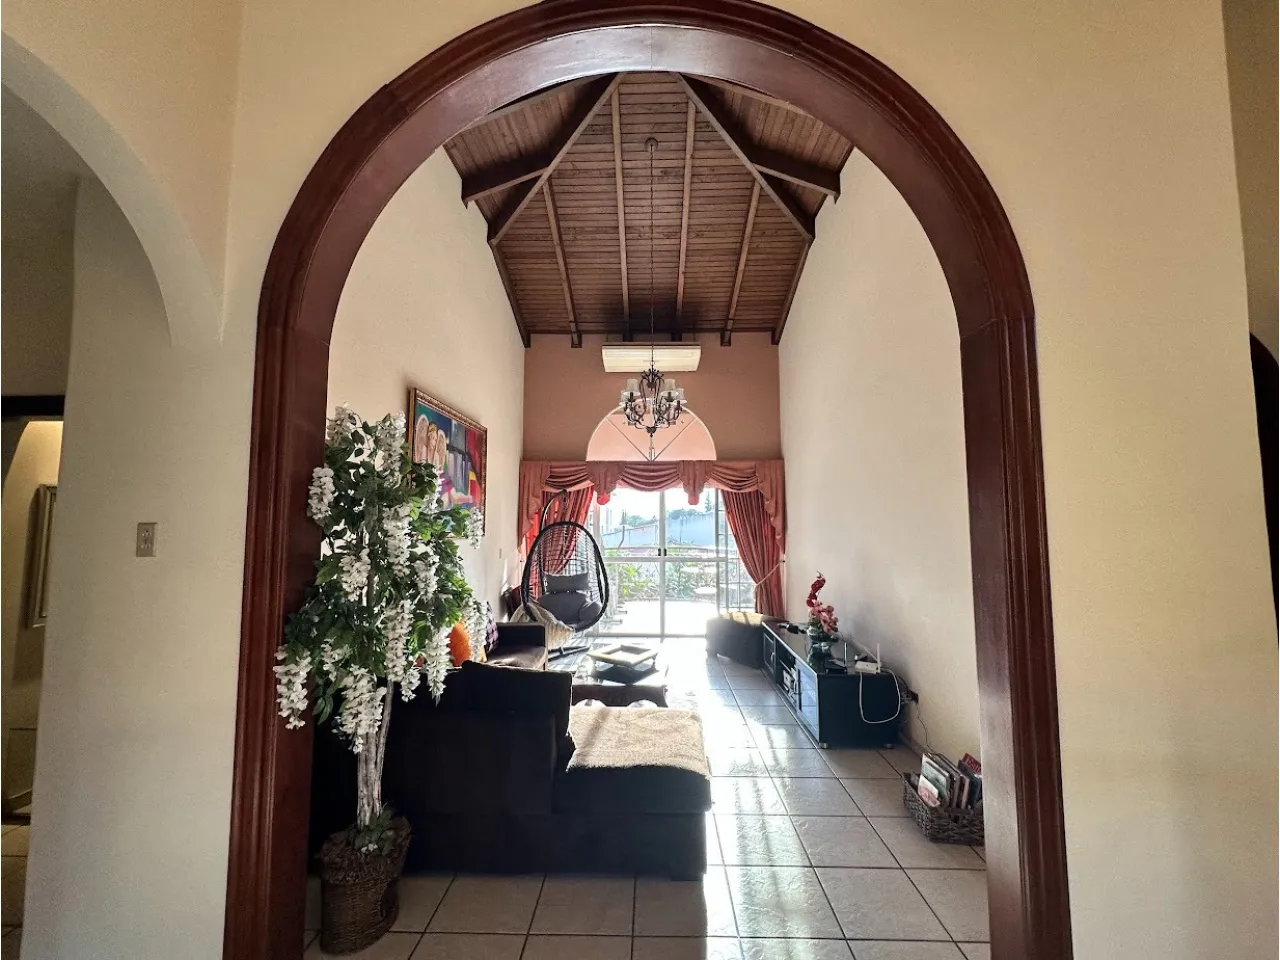 Área de sala familiar cuenta con diferentes sillones y una puerta que da acceso a una hermosa vista de la ciudad